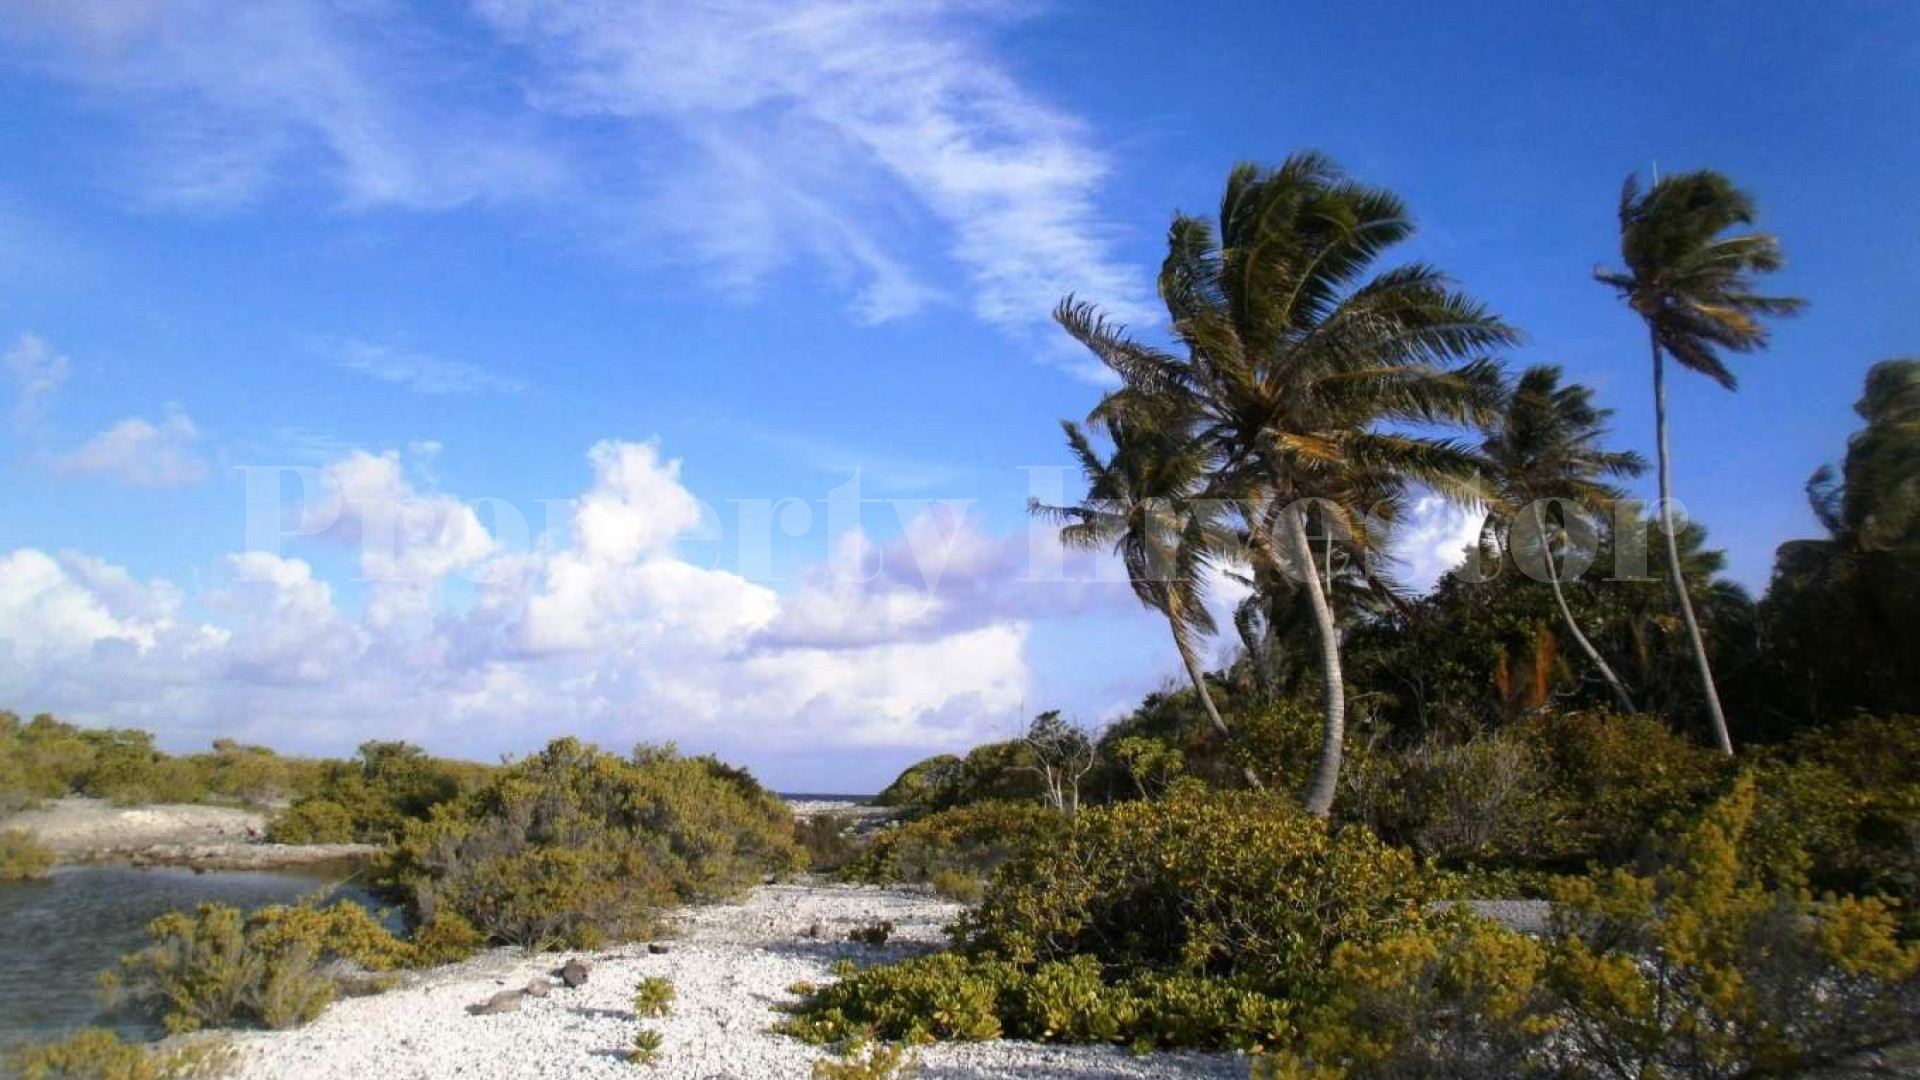 Продается прекрасный дикий остров 1,4 га во Французской Полинезии